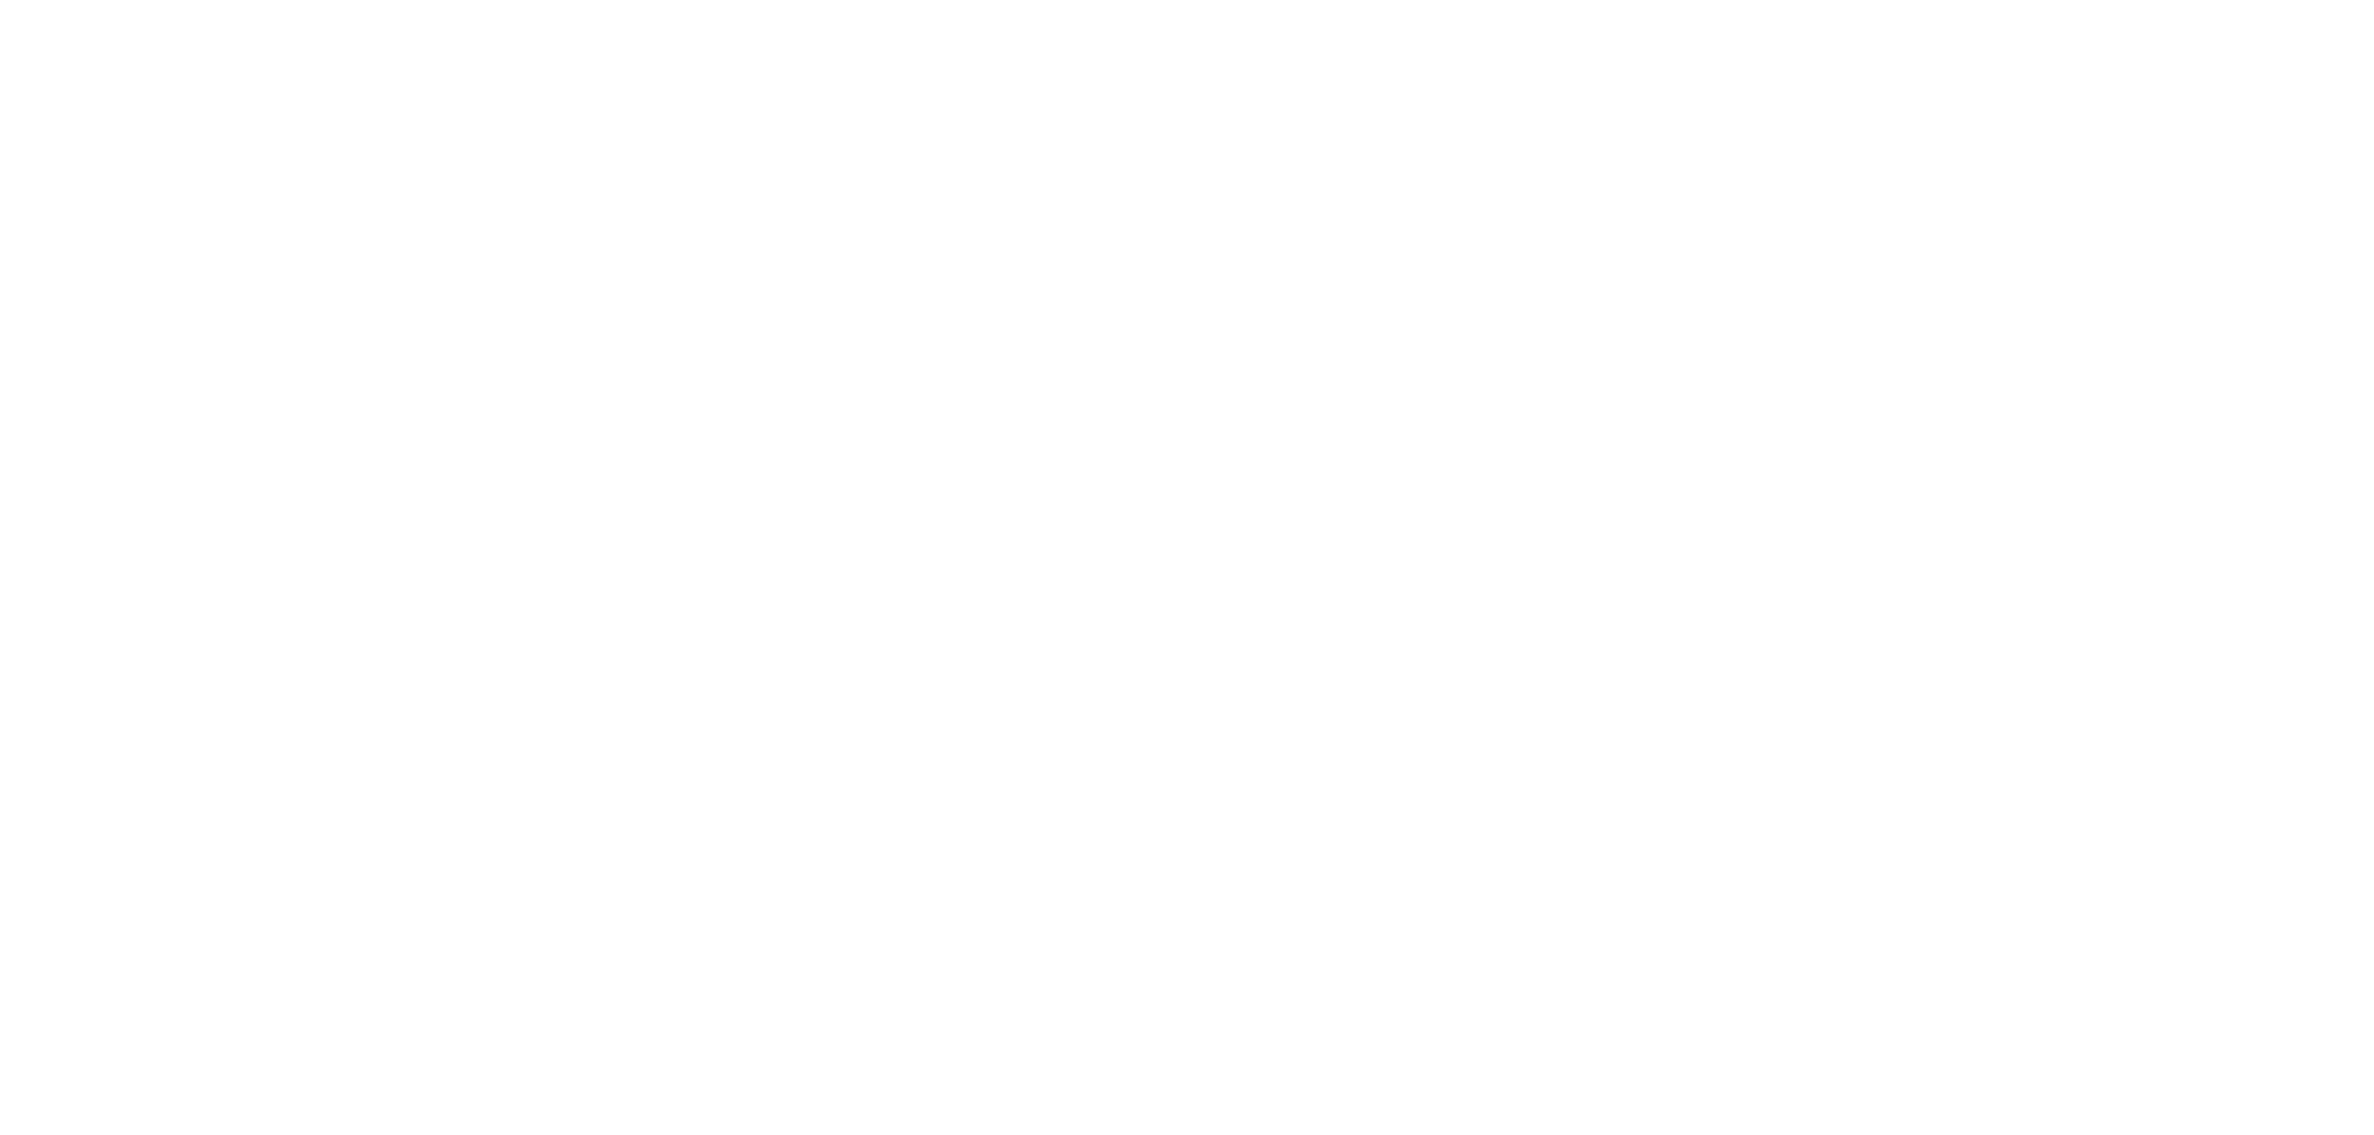 新型コロナウイルス感染症拡大に対する 日本の国際協力NGOの対応戦略 |Towards a Resilient Society